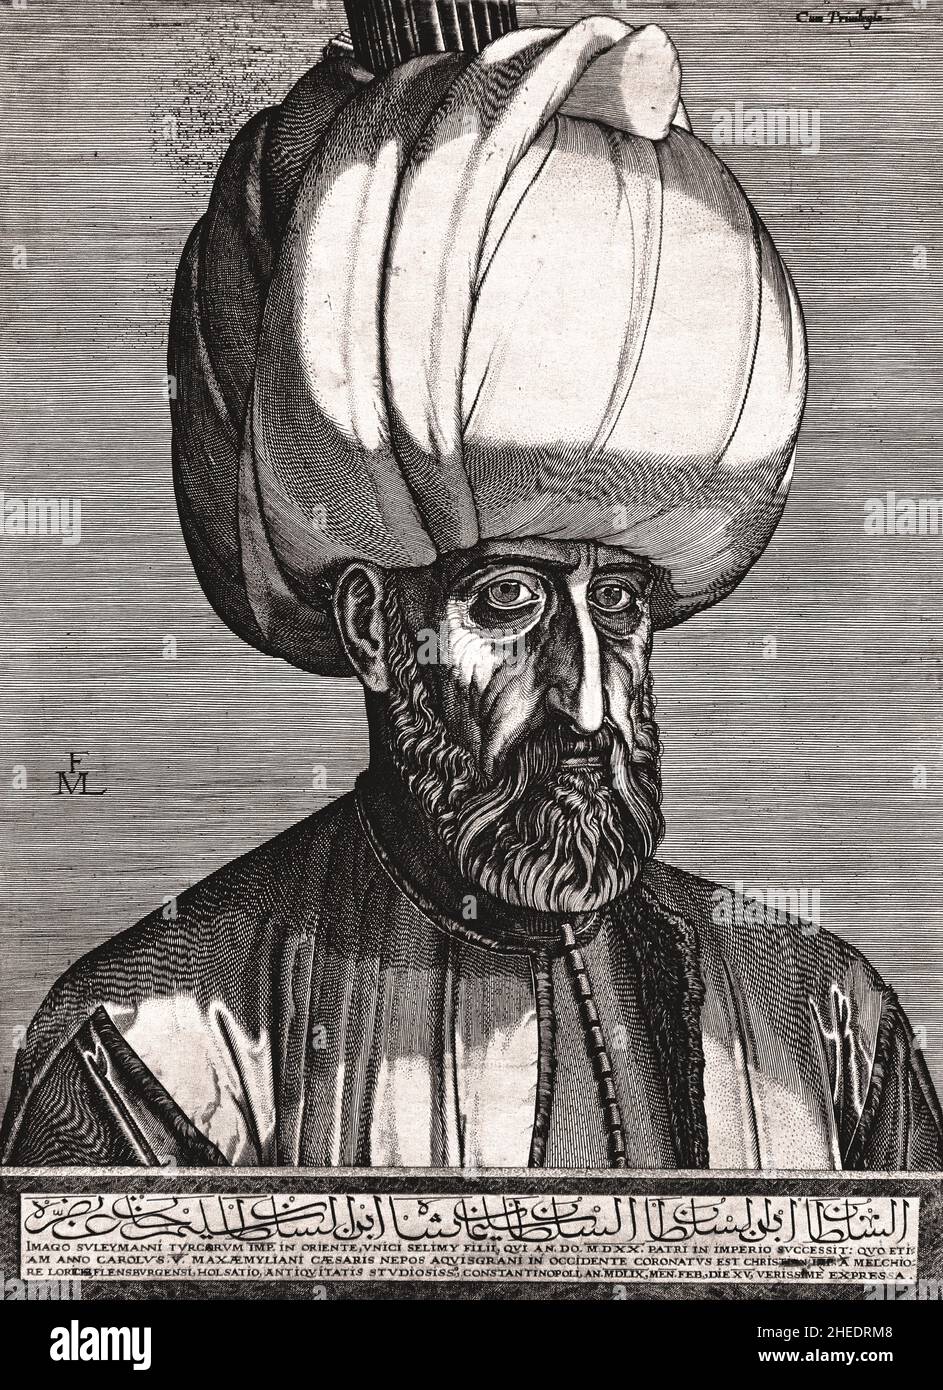 Retrato del Sultán Suleyman El Magnífico de Melchior Lorck. Melchior Lorichs 1526-1598 (Suleiman I, comúnmente conocido como Suleiman el Magnífico en el Oeste y Suleiman el Legislador en su reino, fue el décimo y más antiguo sultán del Imperio Otomano desde 1520 hasta su muerte en 1566.) Foto de stock